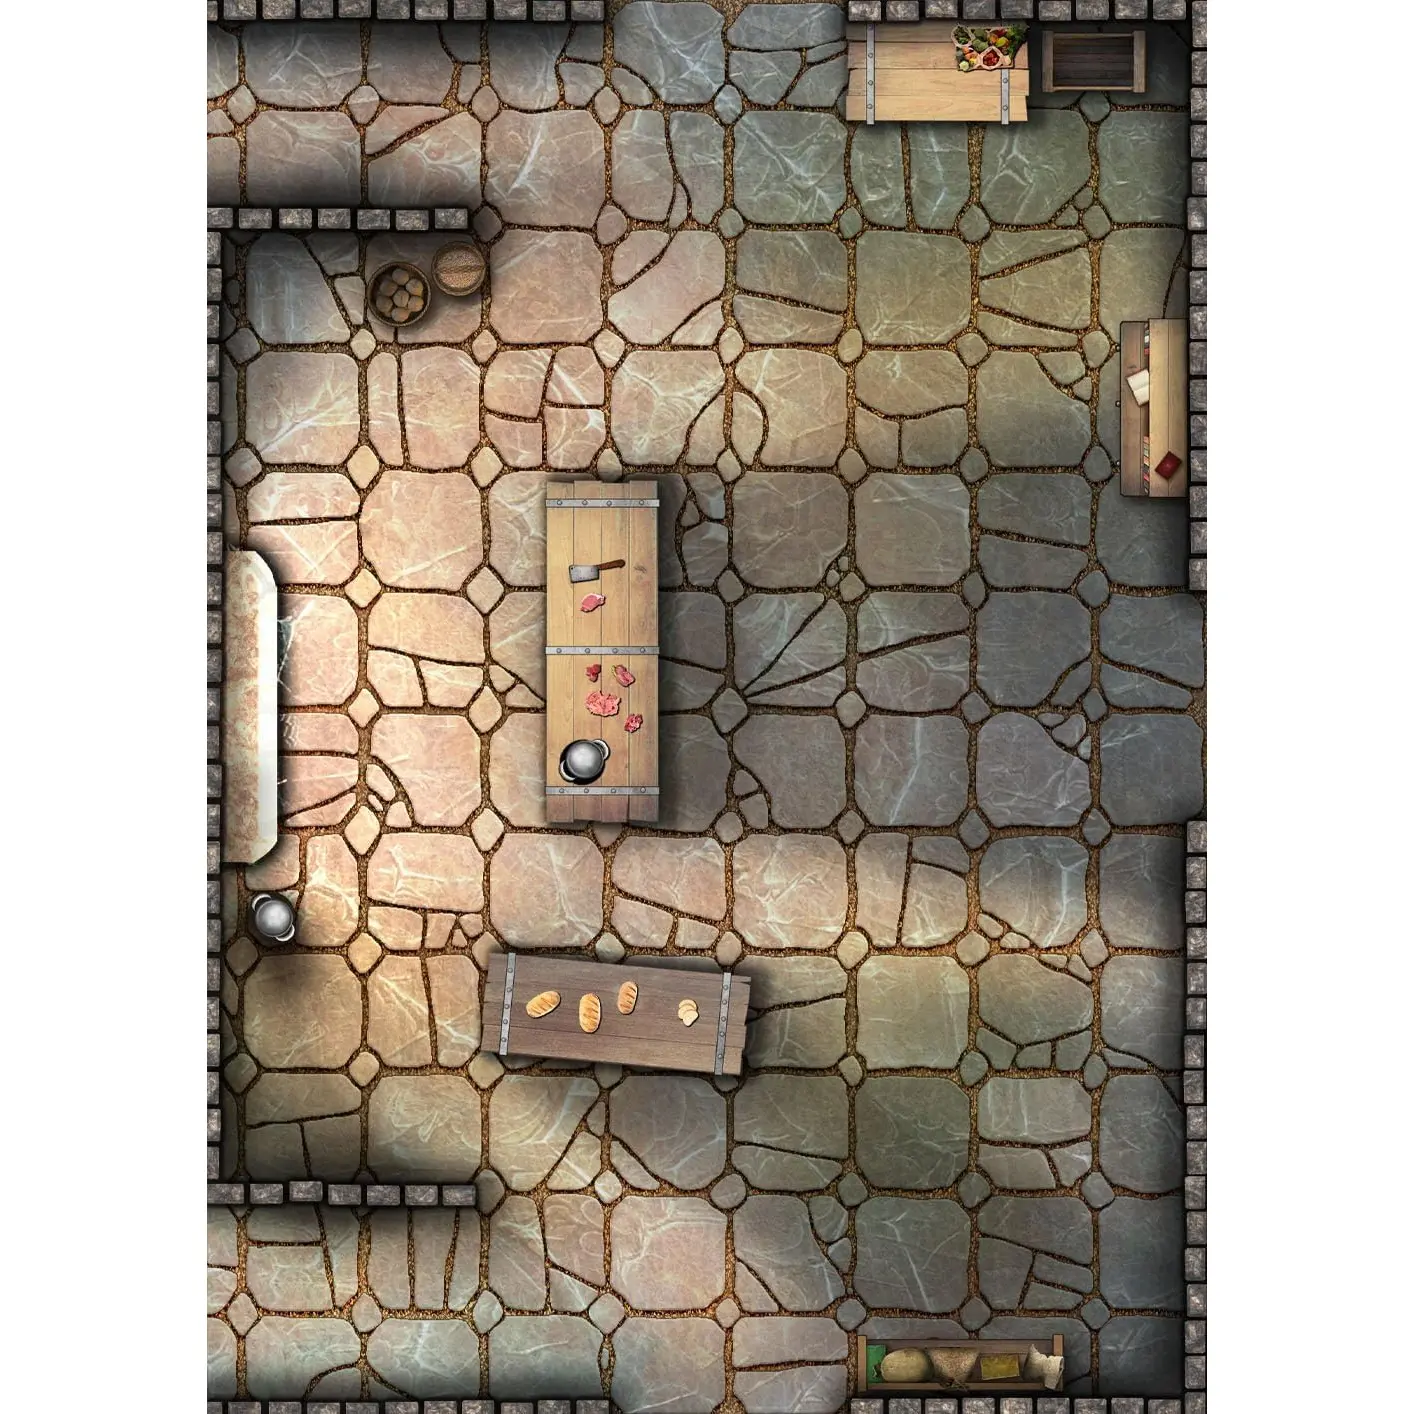 big-book-battle-mats-rooms-vaults-BFLBM042-c